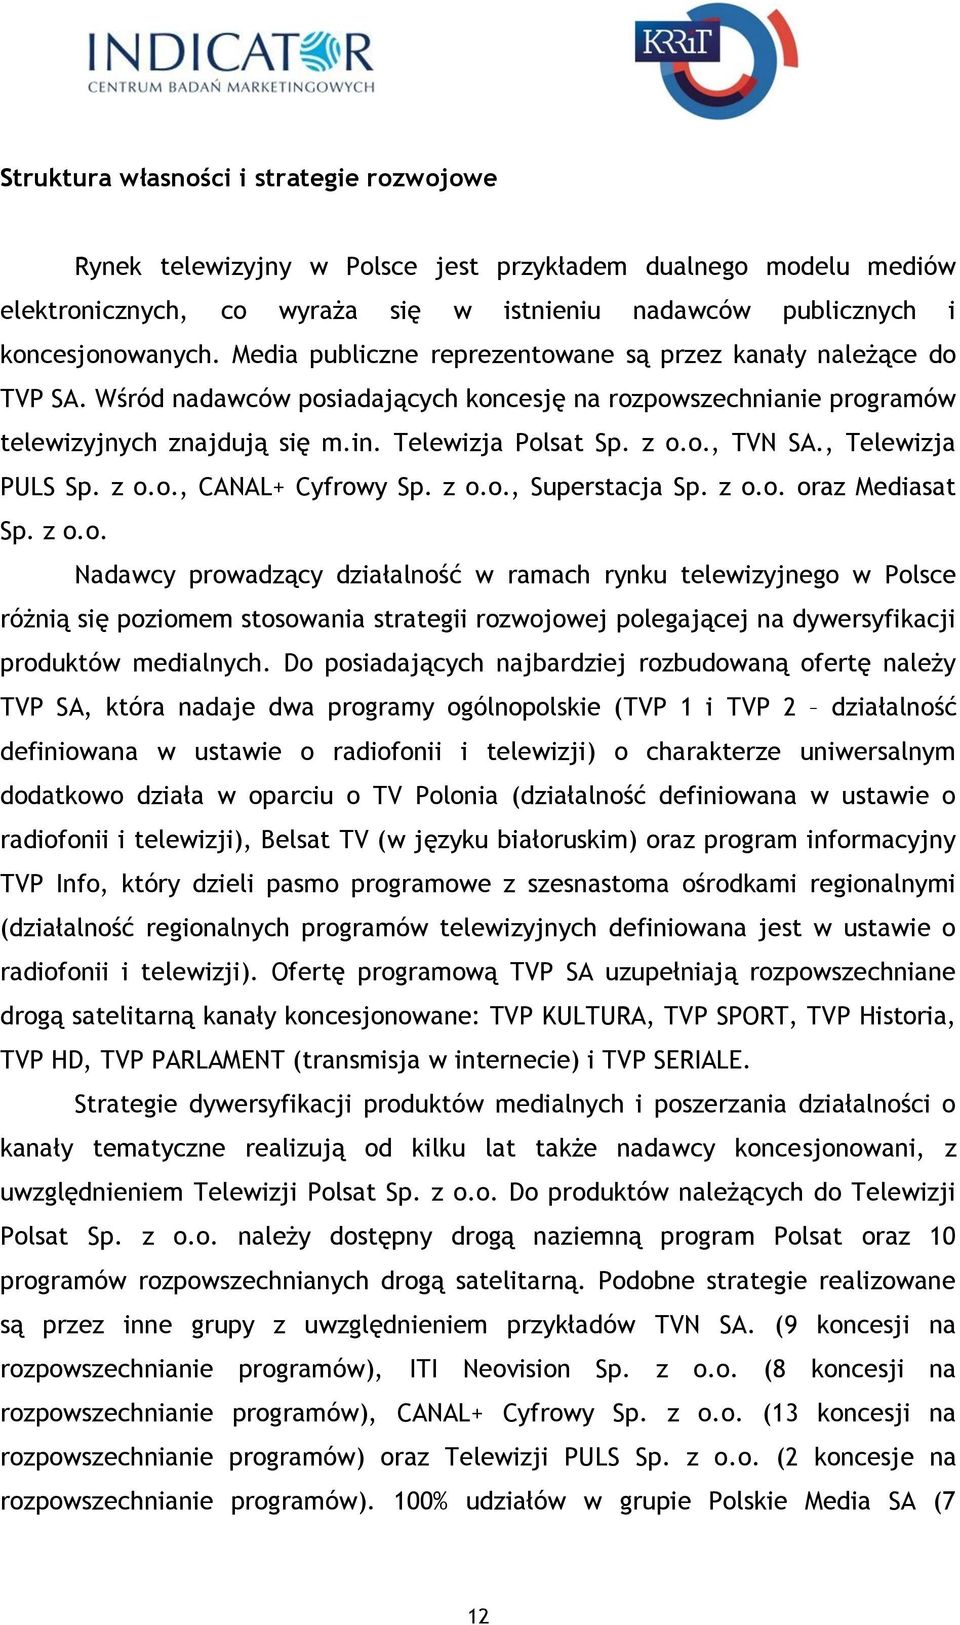 , Telewizja PULS Sp. z o.o., CANAL+ Cyfrowy Sp. z o.o., Superstacja Sp. z o.o. oraz Mediasat Sp. z o.o. Nadawcy prowadzący działalność w ramach rynku telewizyjnego w Polsce różnią się poziomem stosowania strategii rozwojowej polegającej na dywersyfikacji produktów medialnych.